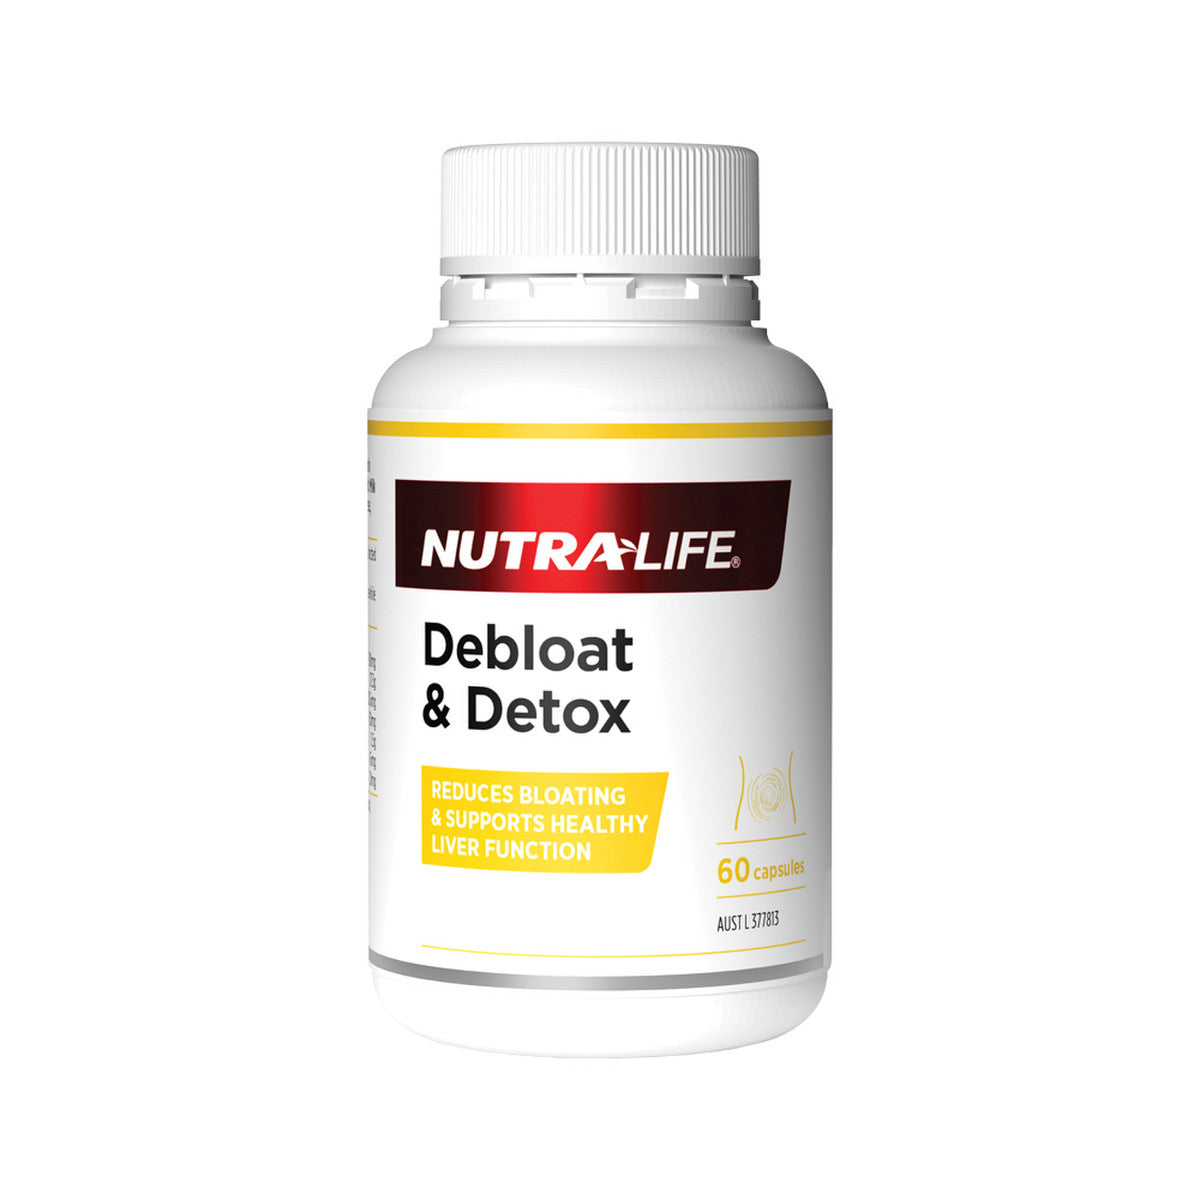 NutraLife - Debloat & Detox